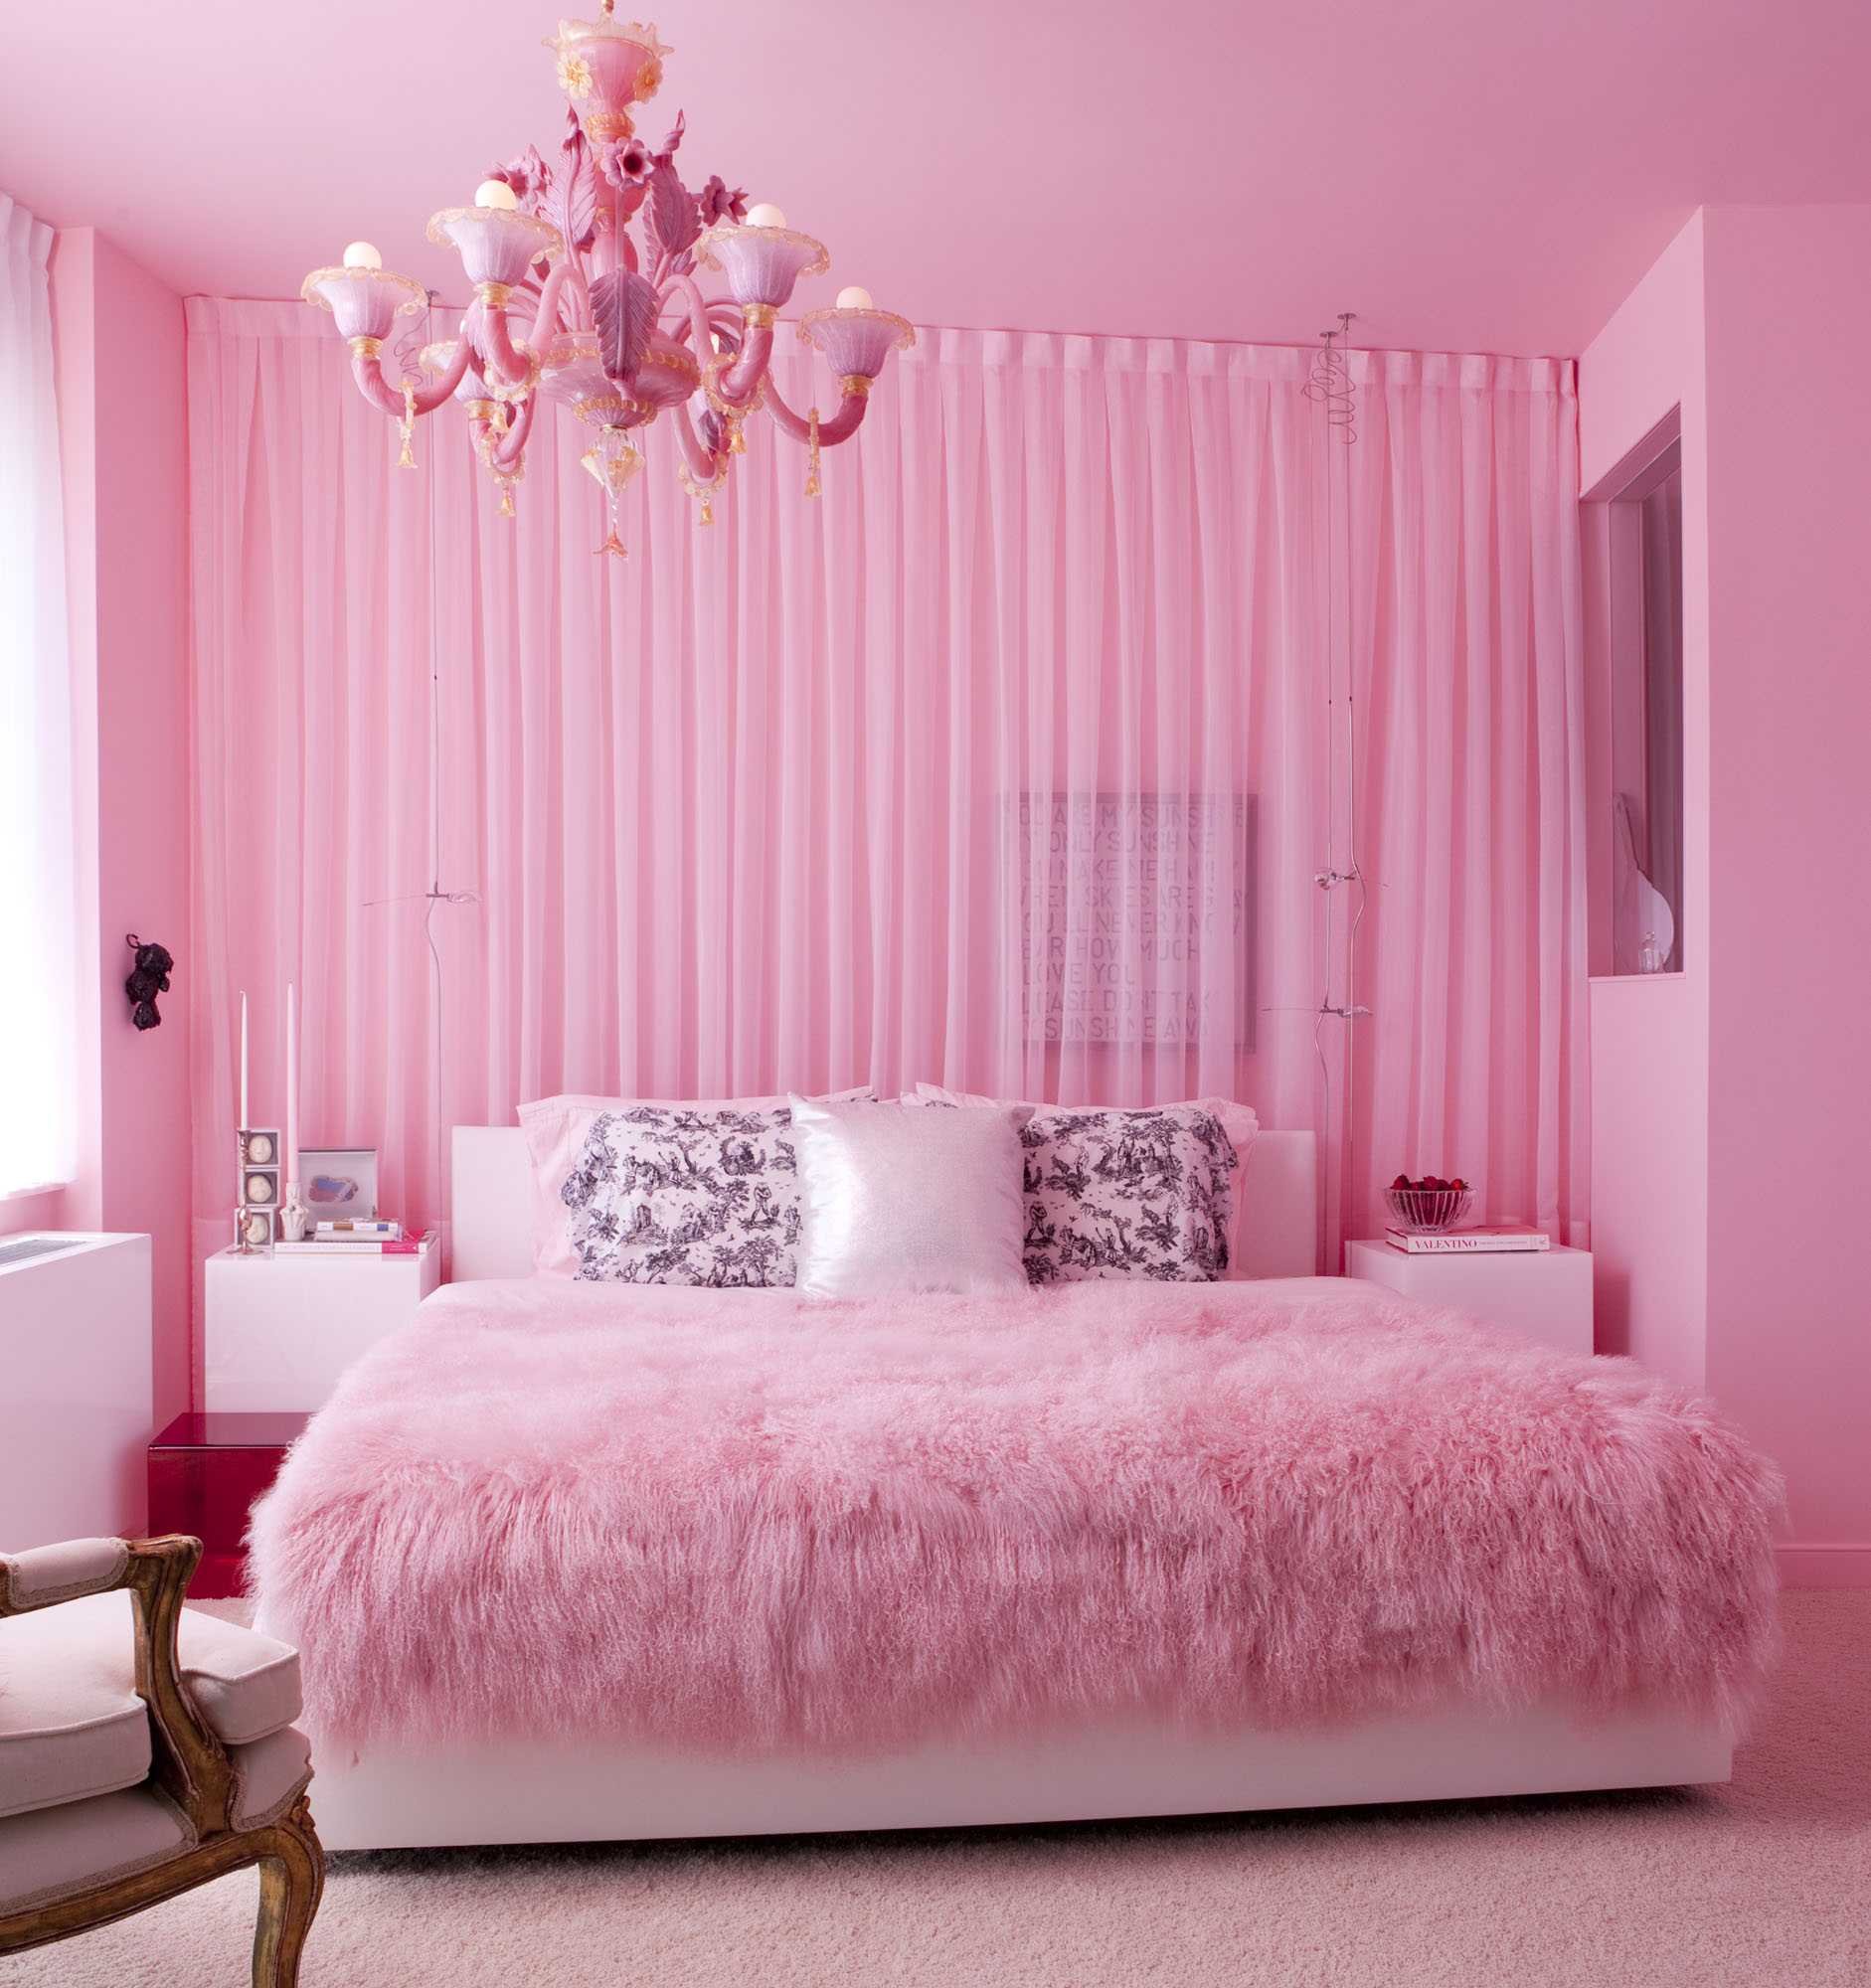 Комната в розовых тонах. Розовая спальня. Спальня для девочки в розовых тонах. Розовые шторы в интерьере спальни. Спальня в розовых тонах.